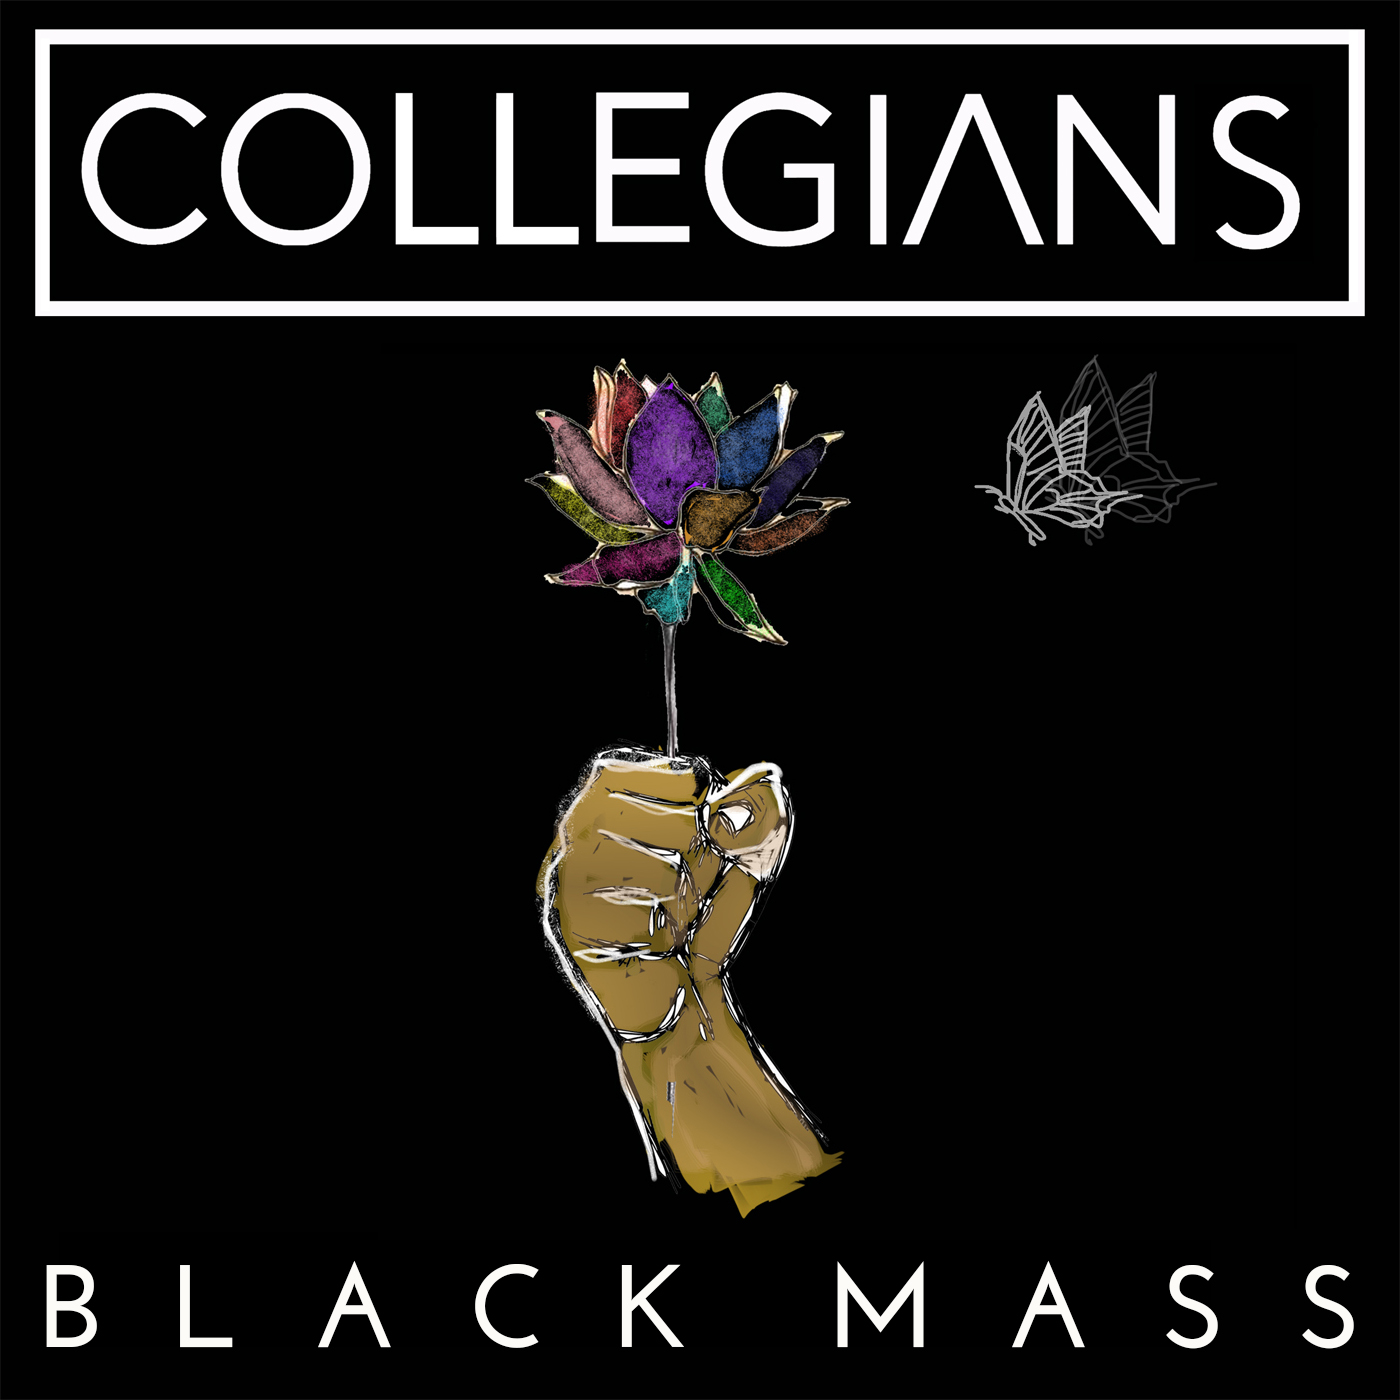 Collegians Black Mass